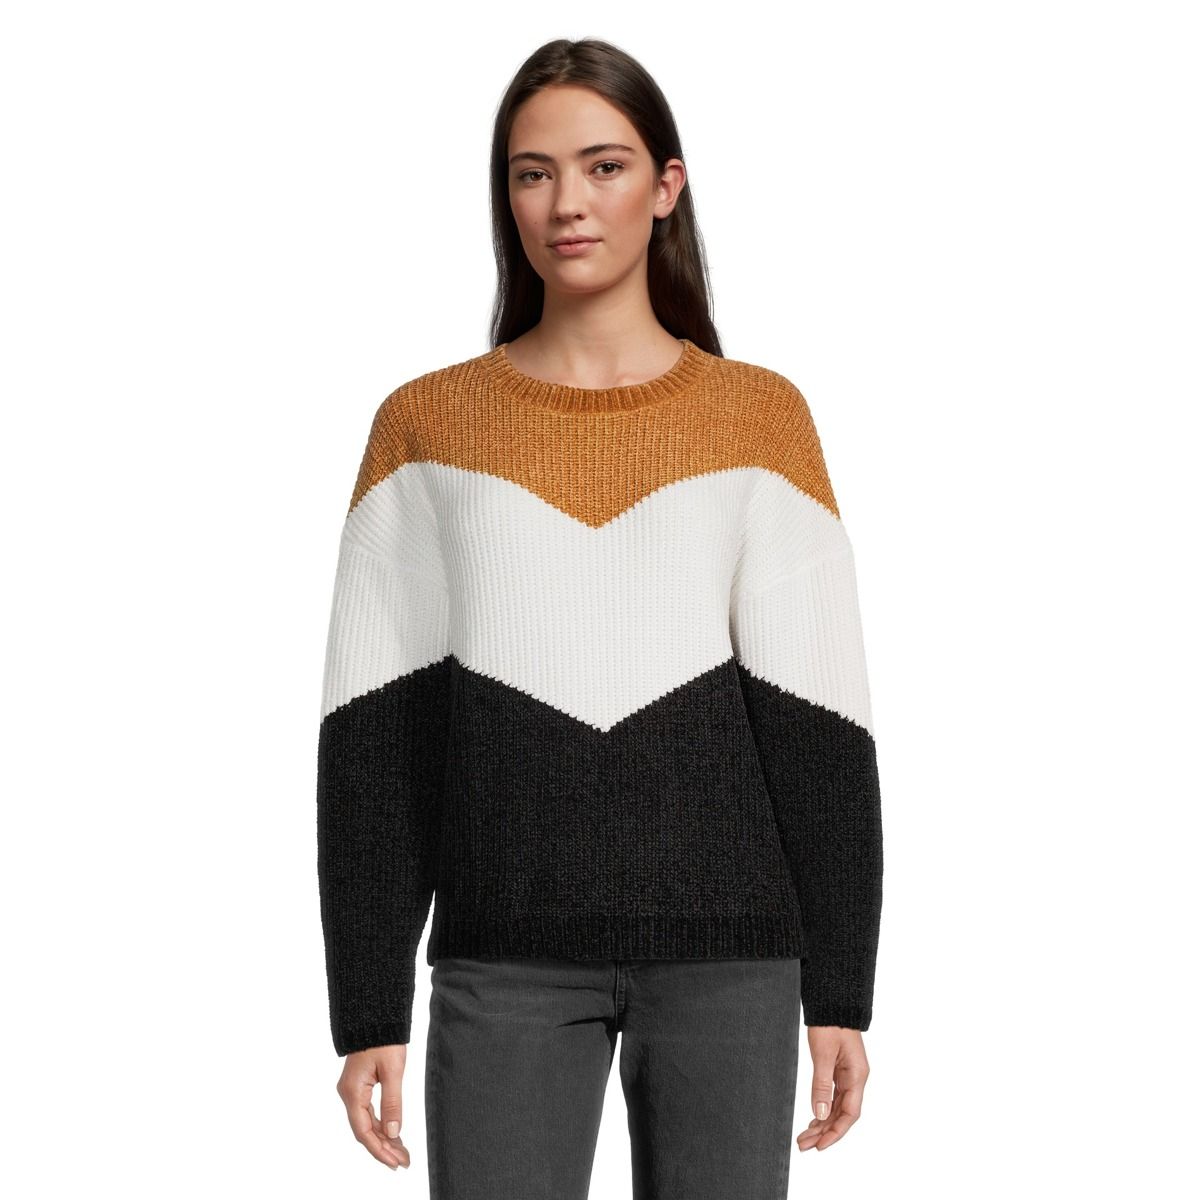 Ripzone Women's Jasper Chenillle Sweater 2.0